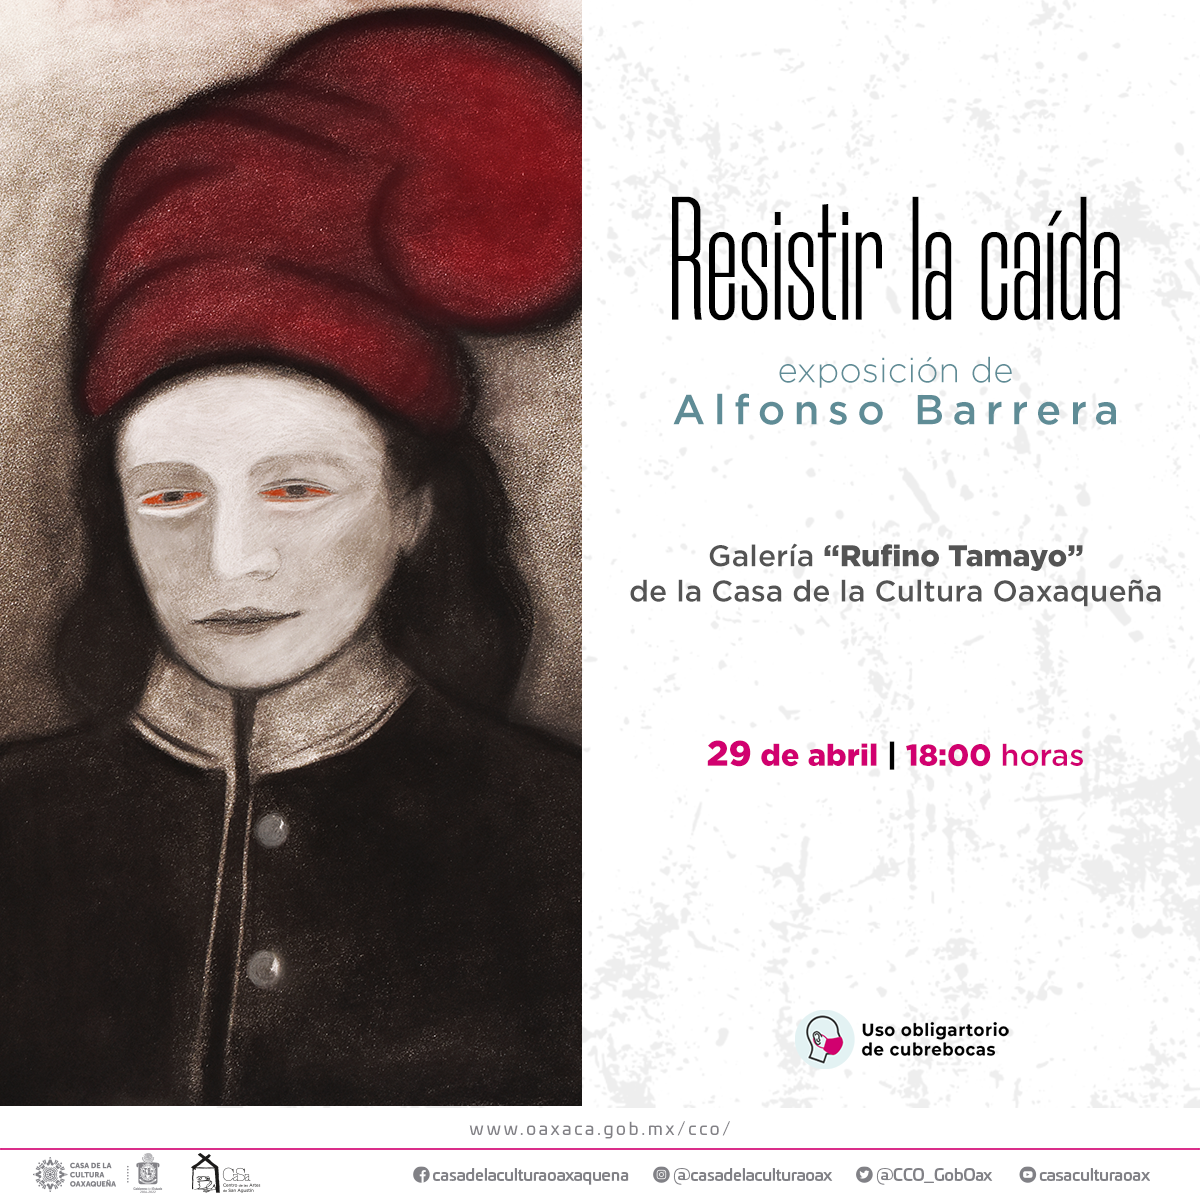 Exhibirá Alfonso Barrera “Resistir la caída” en la Casa de la Cultura Oaxaqueña